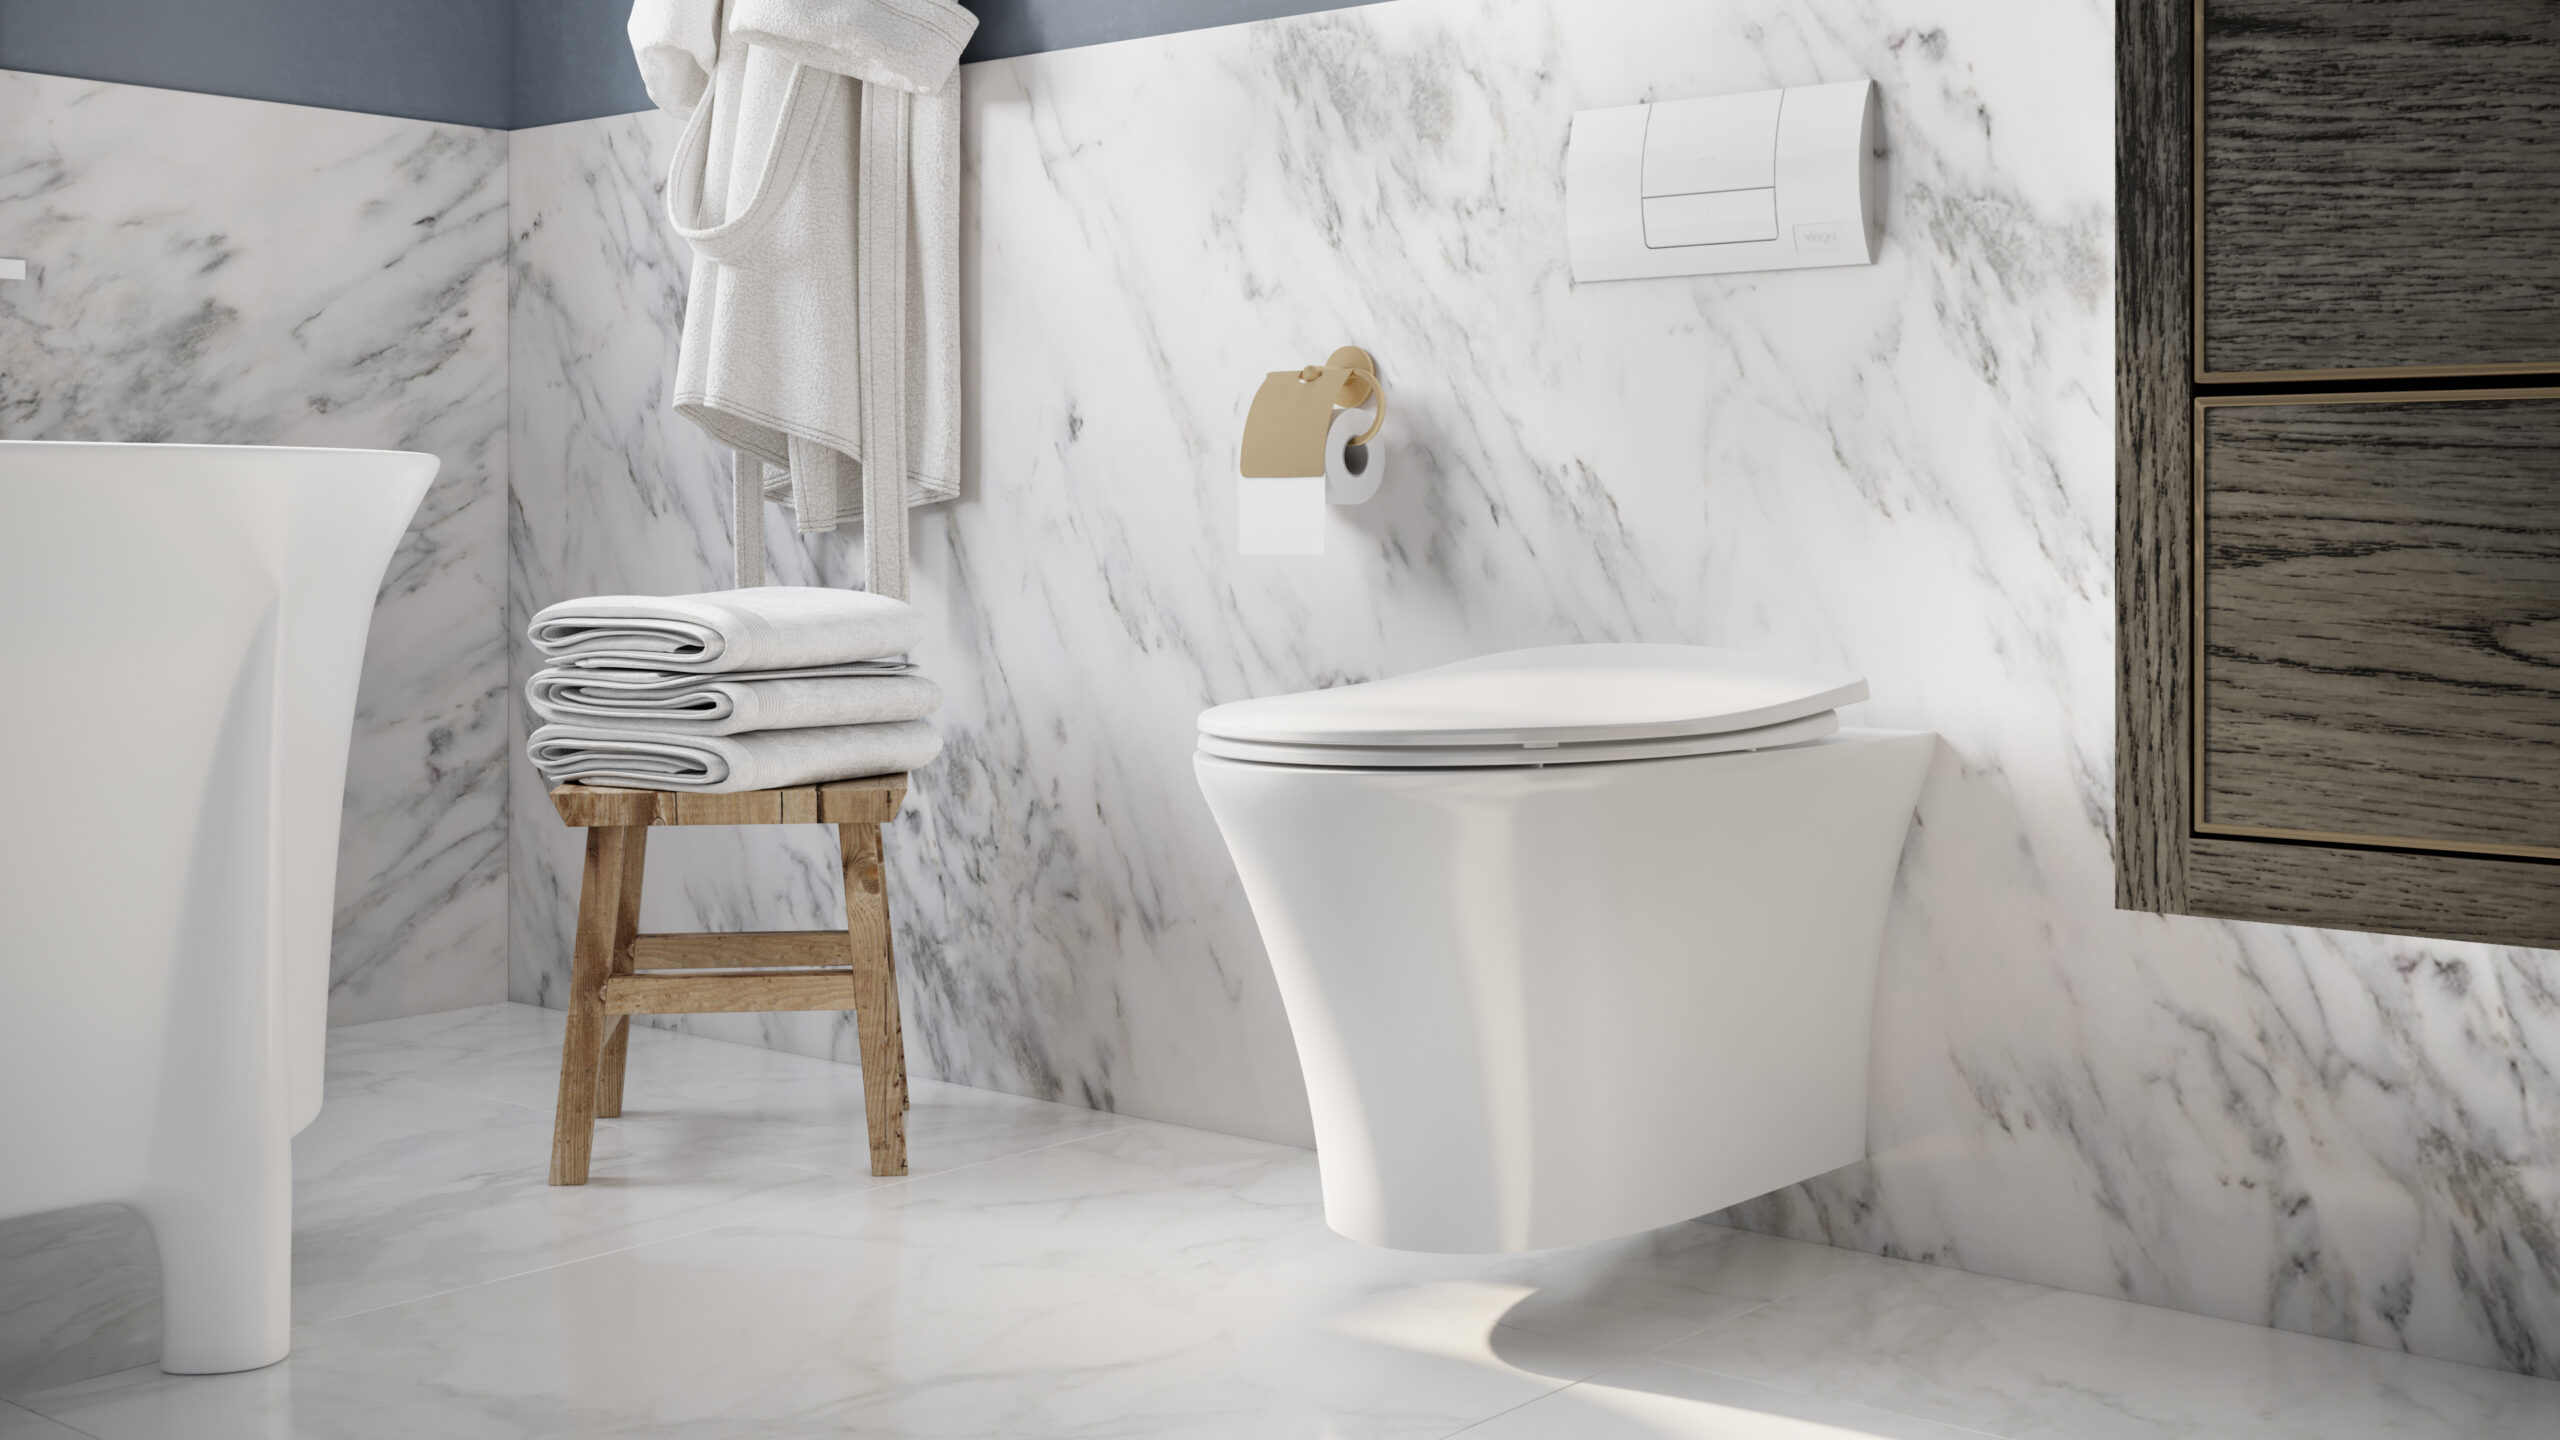 Icera Announces Four New Sleek Wall-Mounted Toilets